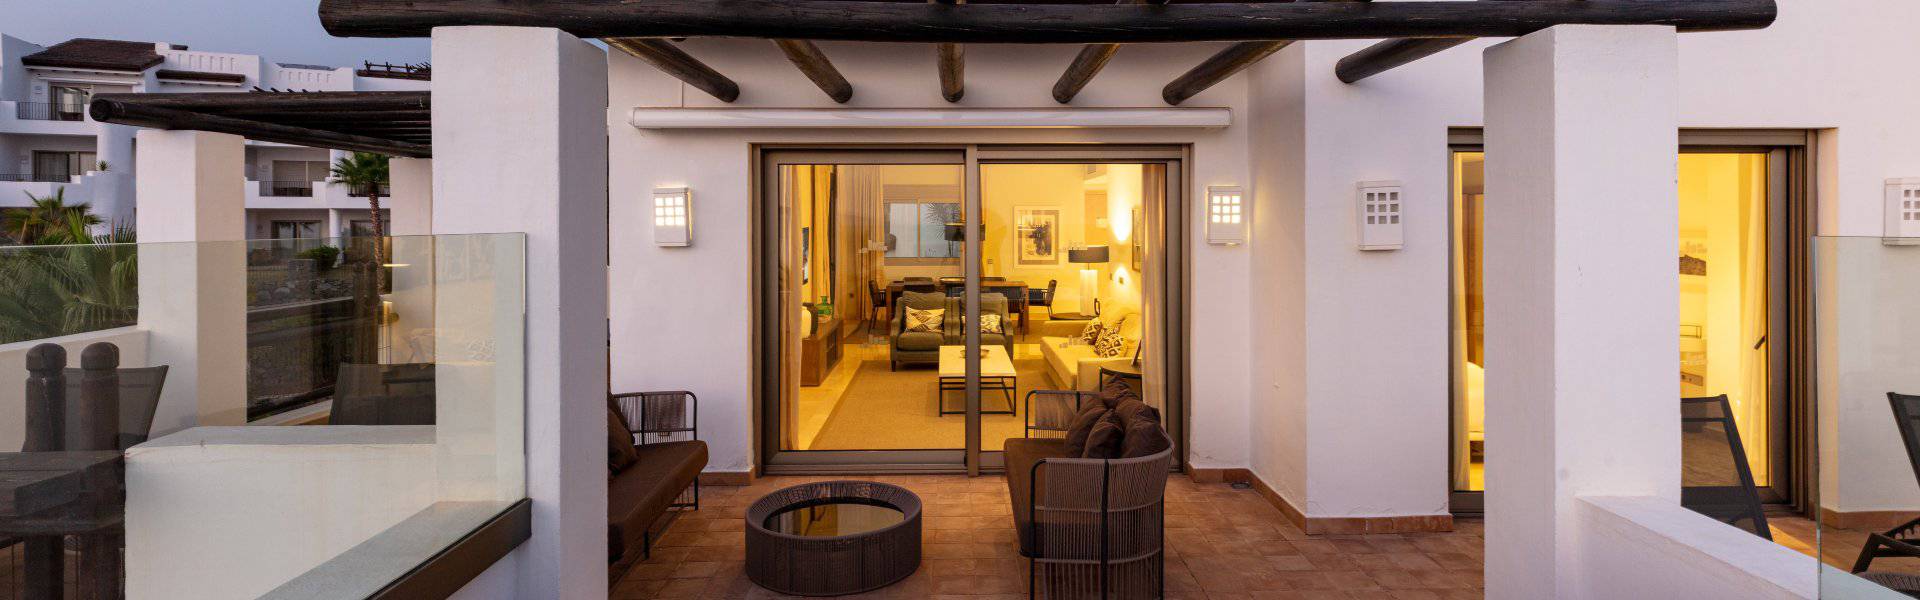 Hotel las terrazas de abama suites 5* Hotel Las Terrazas de Abama Suites Tenerife